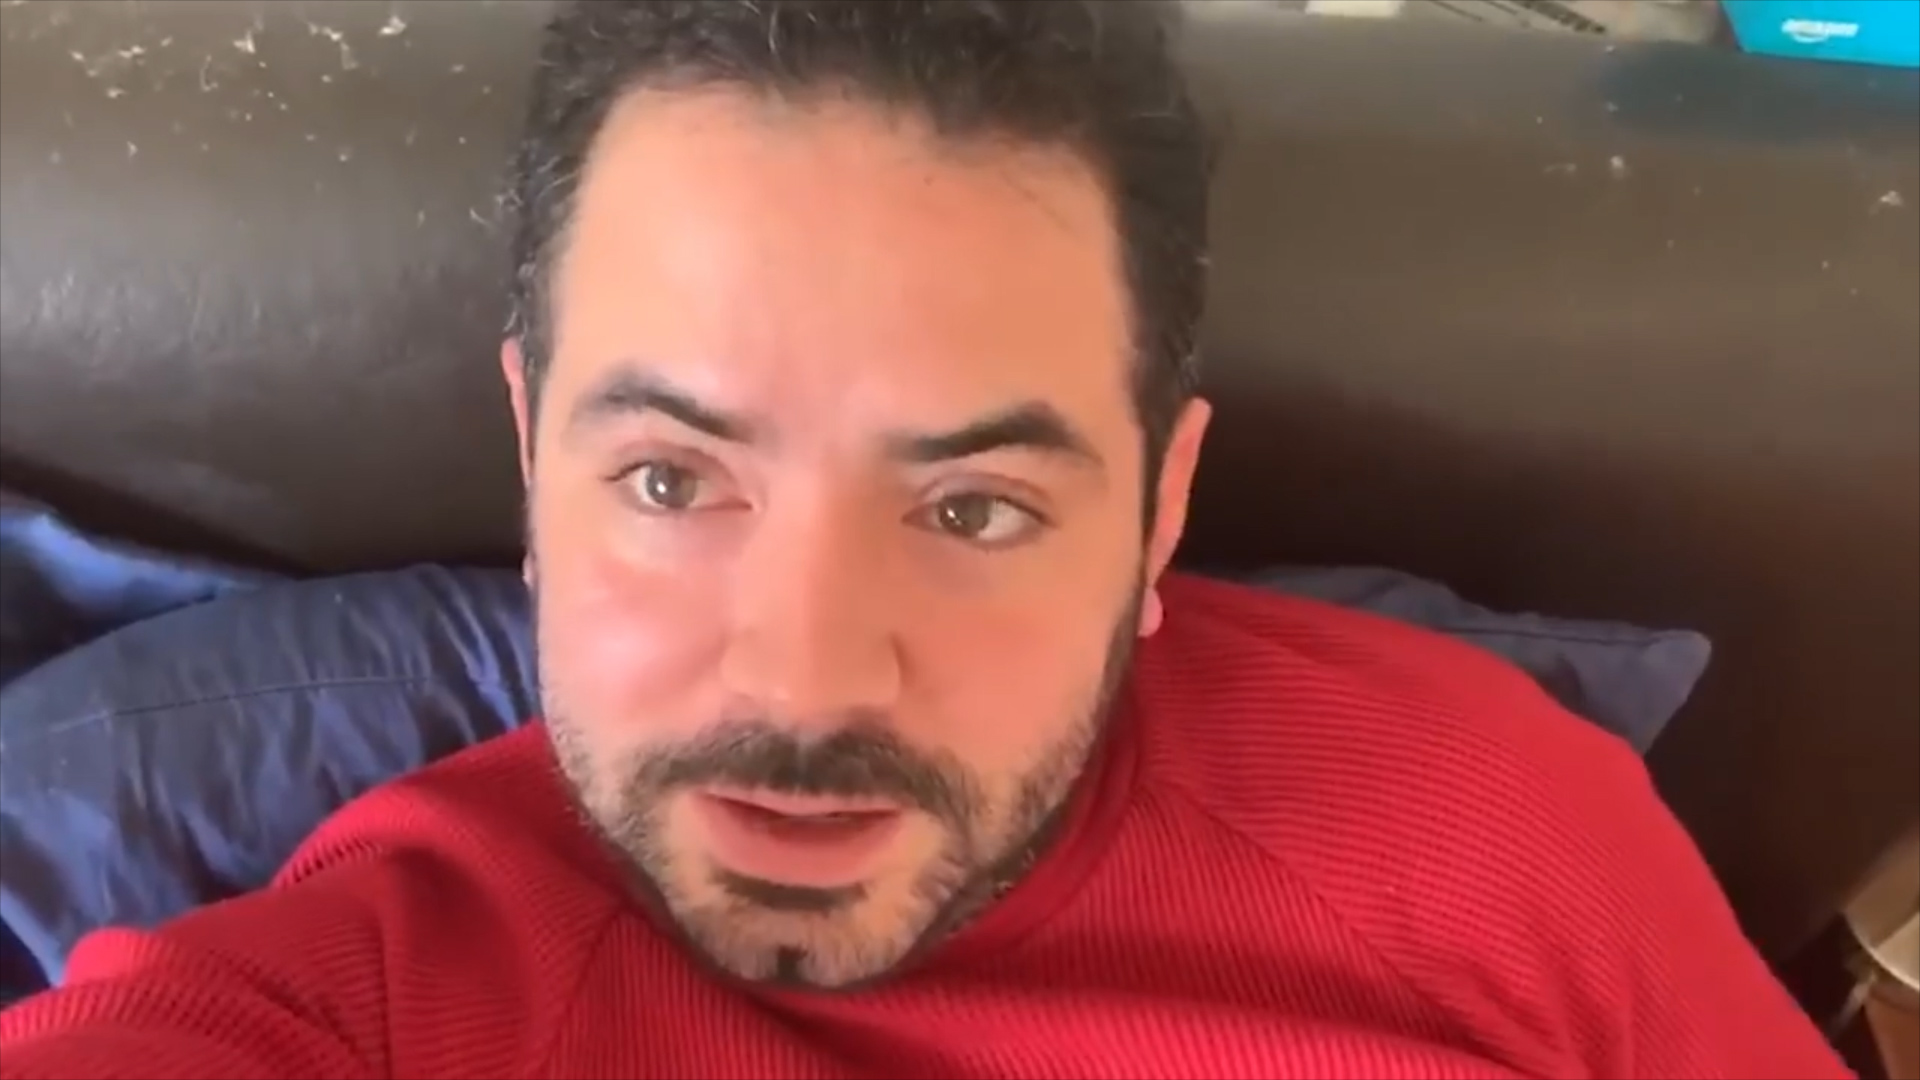 El actor confesó que no hará una denuncia por la vía legal (Foto: José Eduardo Derbez/Youtube)